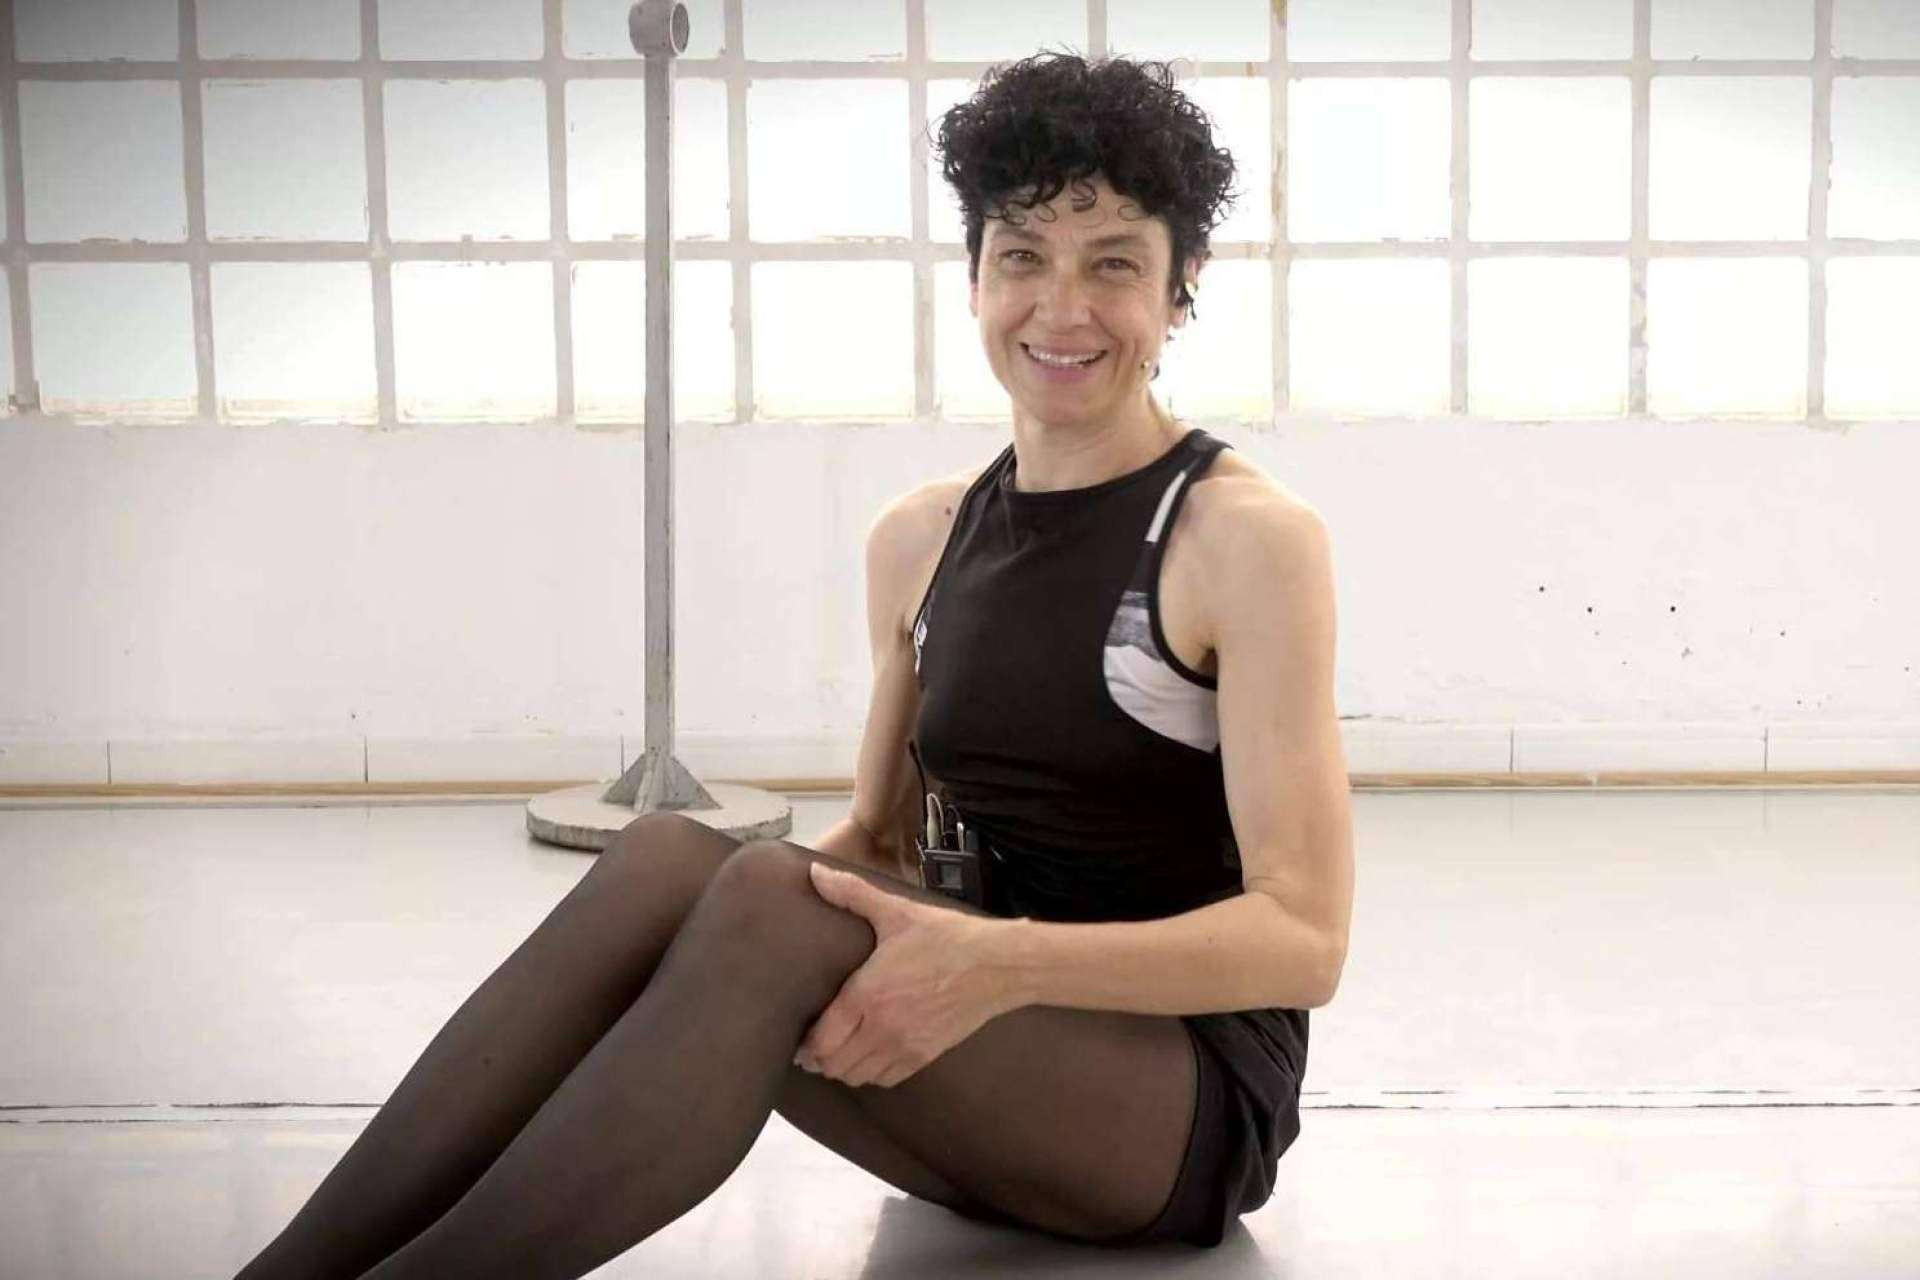  Lograr piernas estilizadas y tonificadas, con las clases de Fitness Ballet de Elena Marco 